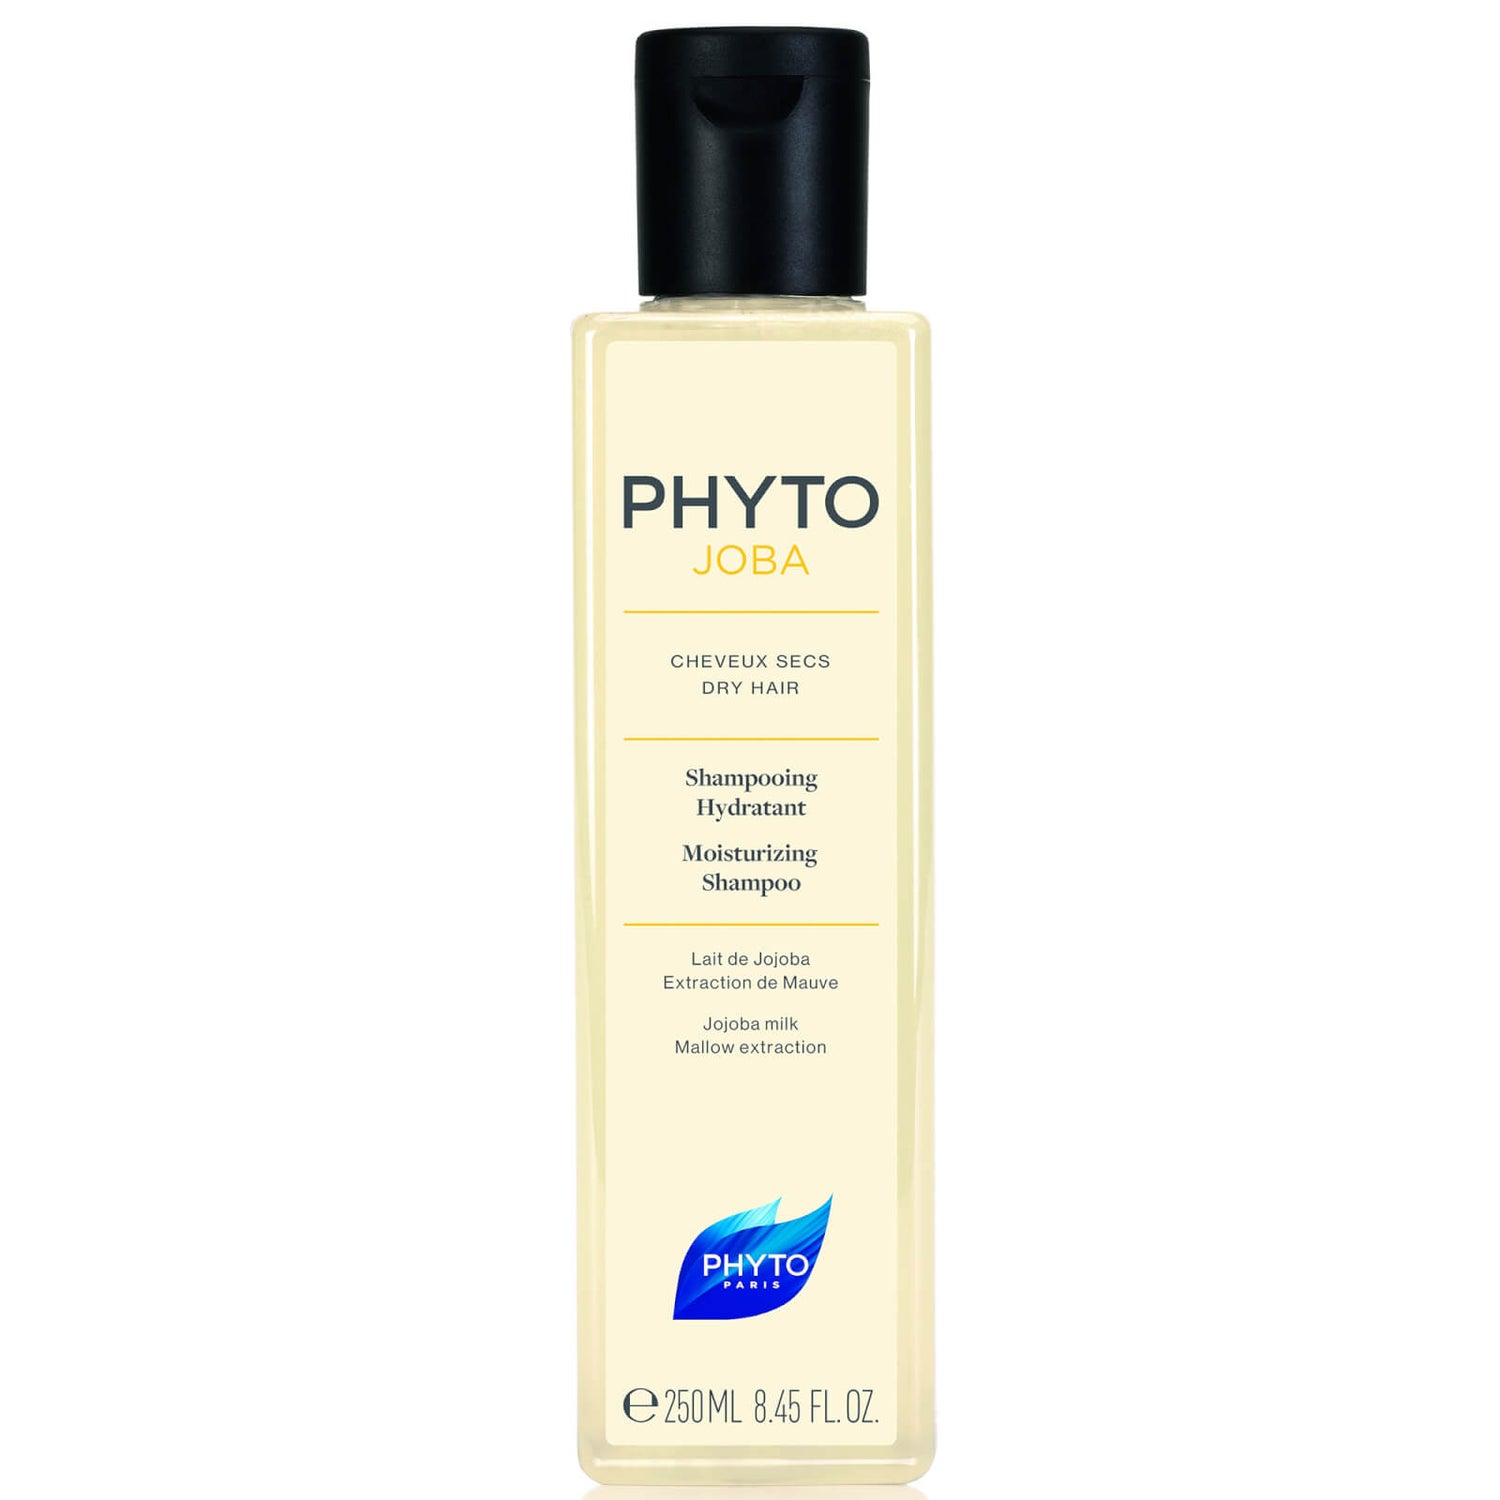 Phyto PHYTO JOBA Moisturizing Shampoo (8.45 fl. oz.)